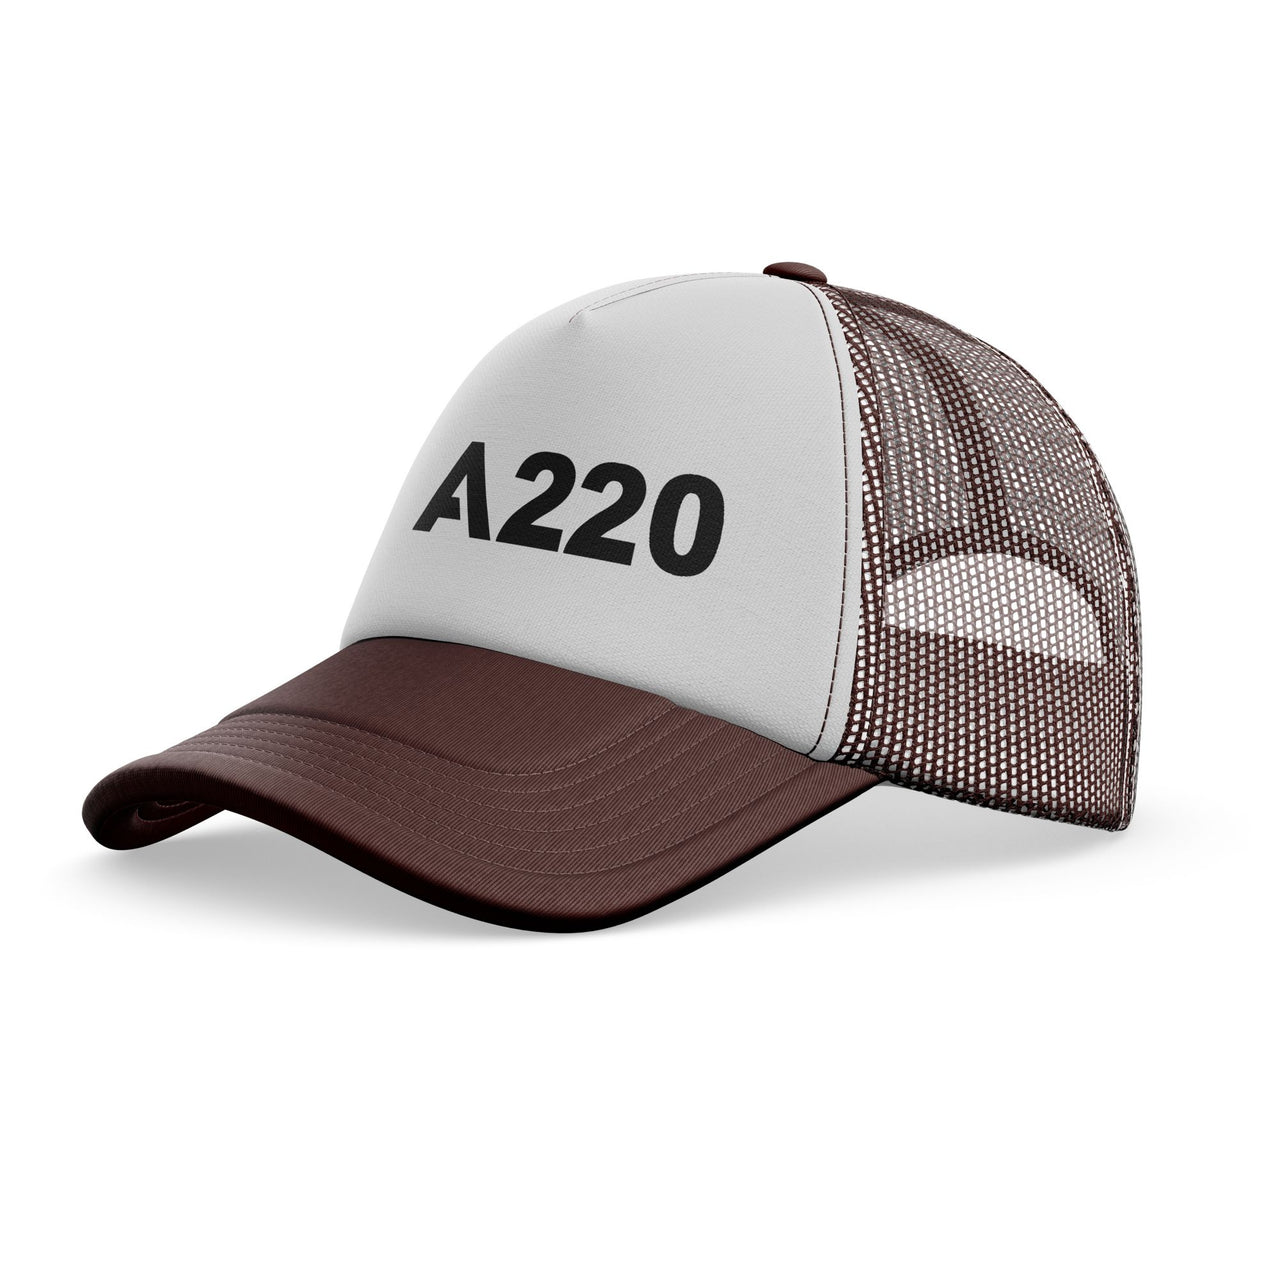 A220 Flat Text Designed Trucker Caps & Hats